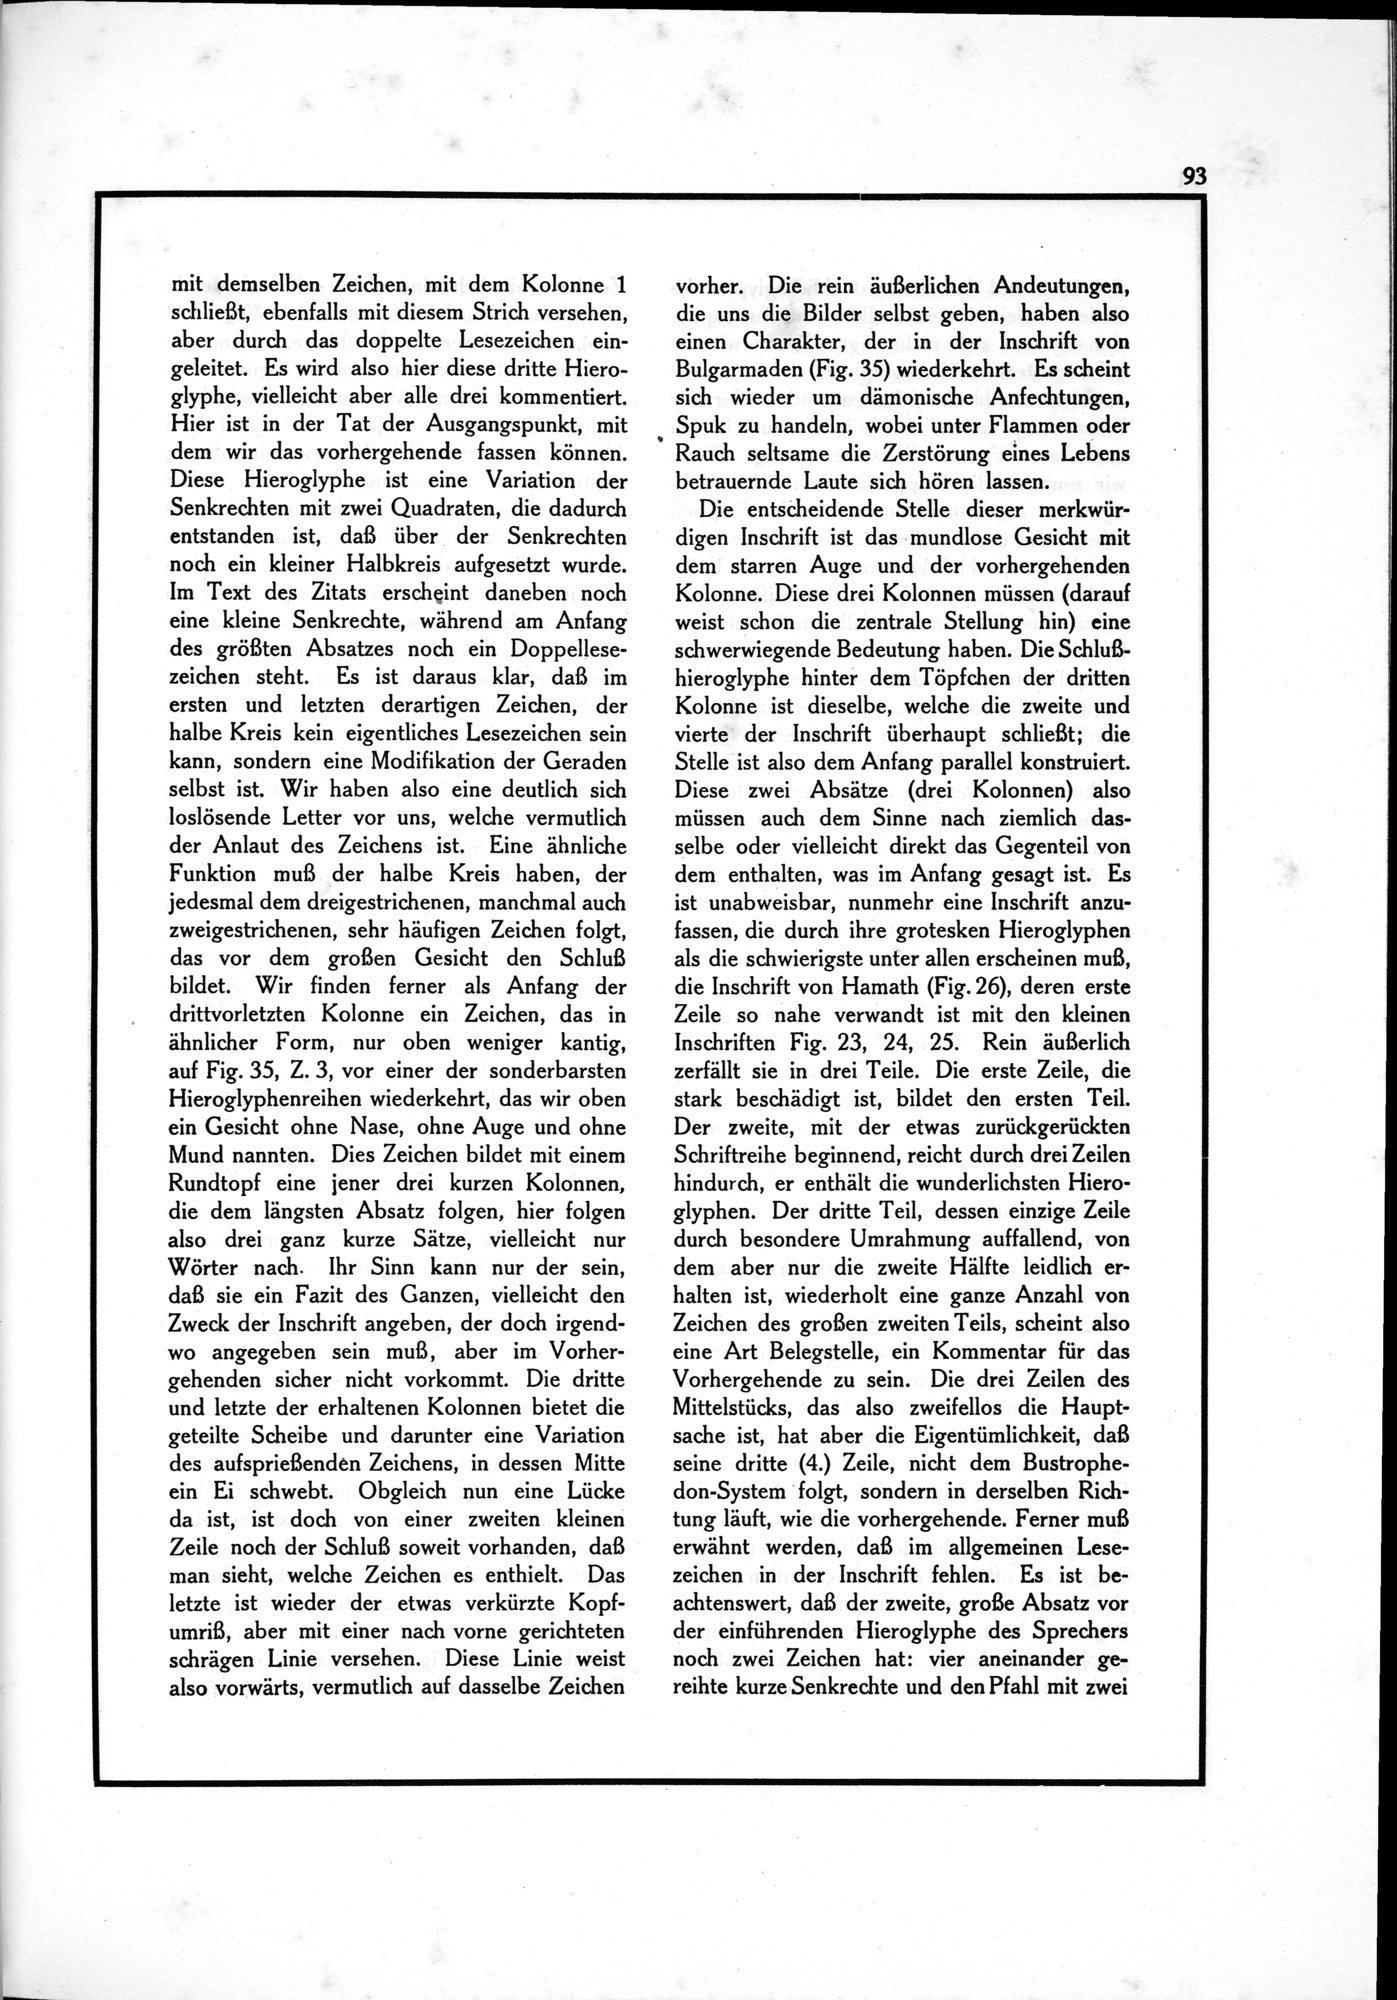 Die Teufel des Avesta und Ihre Beziehungen zur Ikonographie des Buddhismus Zentral-Asiens : vol.1 / Page 97 (Grayscale High Resolution Image)